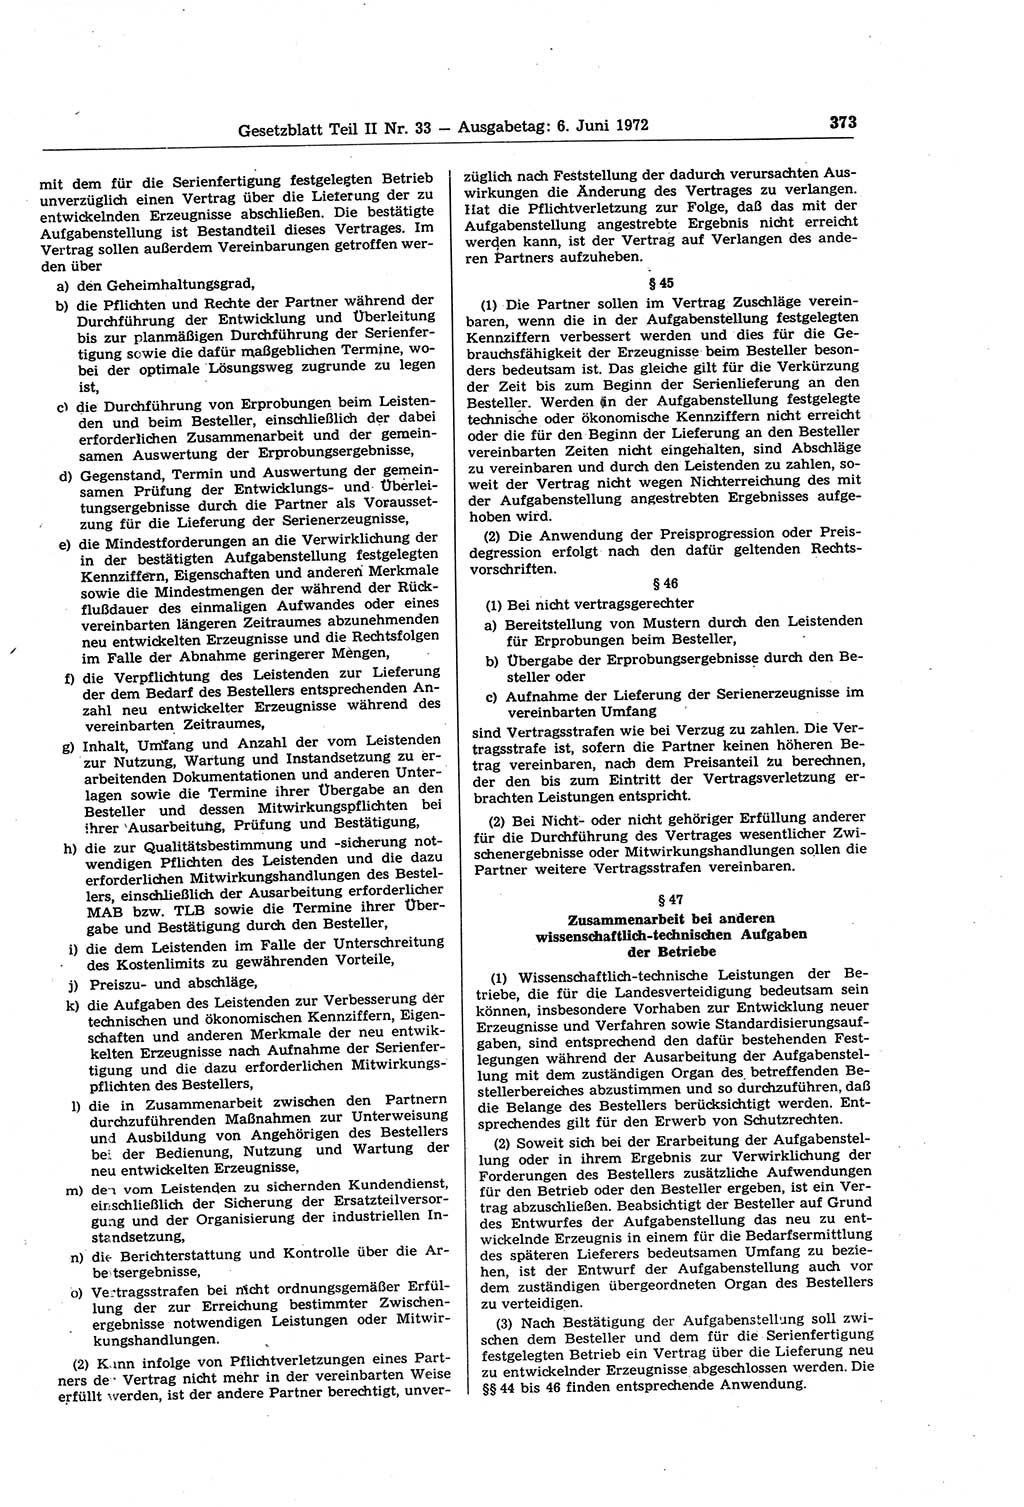 Gesetzblatt (GBl.) der Deutschen Demokratischen Republik (DDR) Teil ⅠⅠ 1972, Seite 373 (GBl. DDR ⅠⅠ 1972, S. 373)